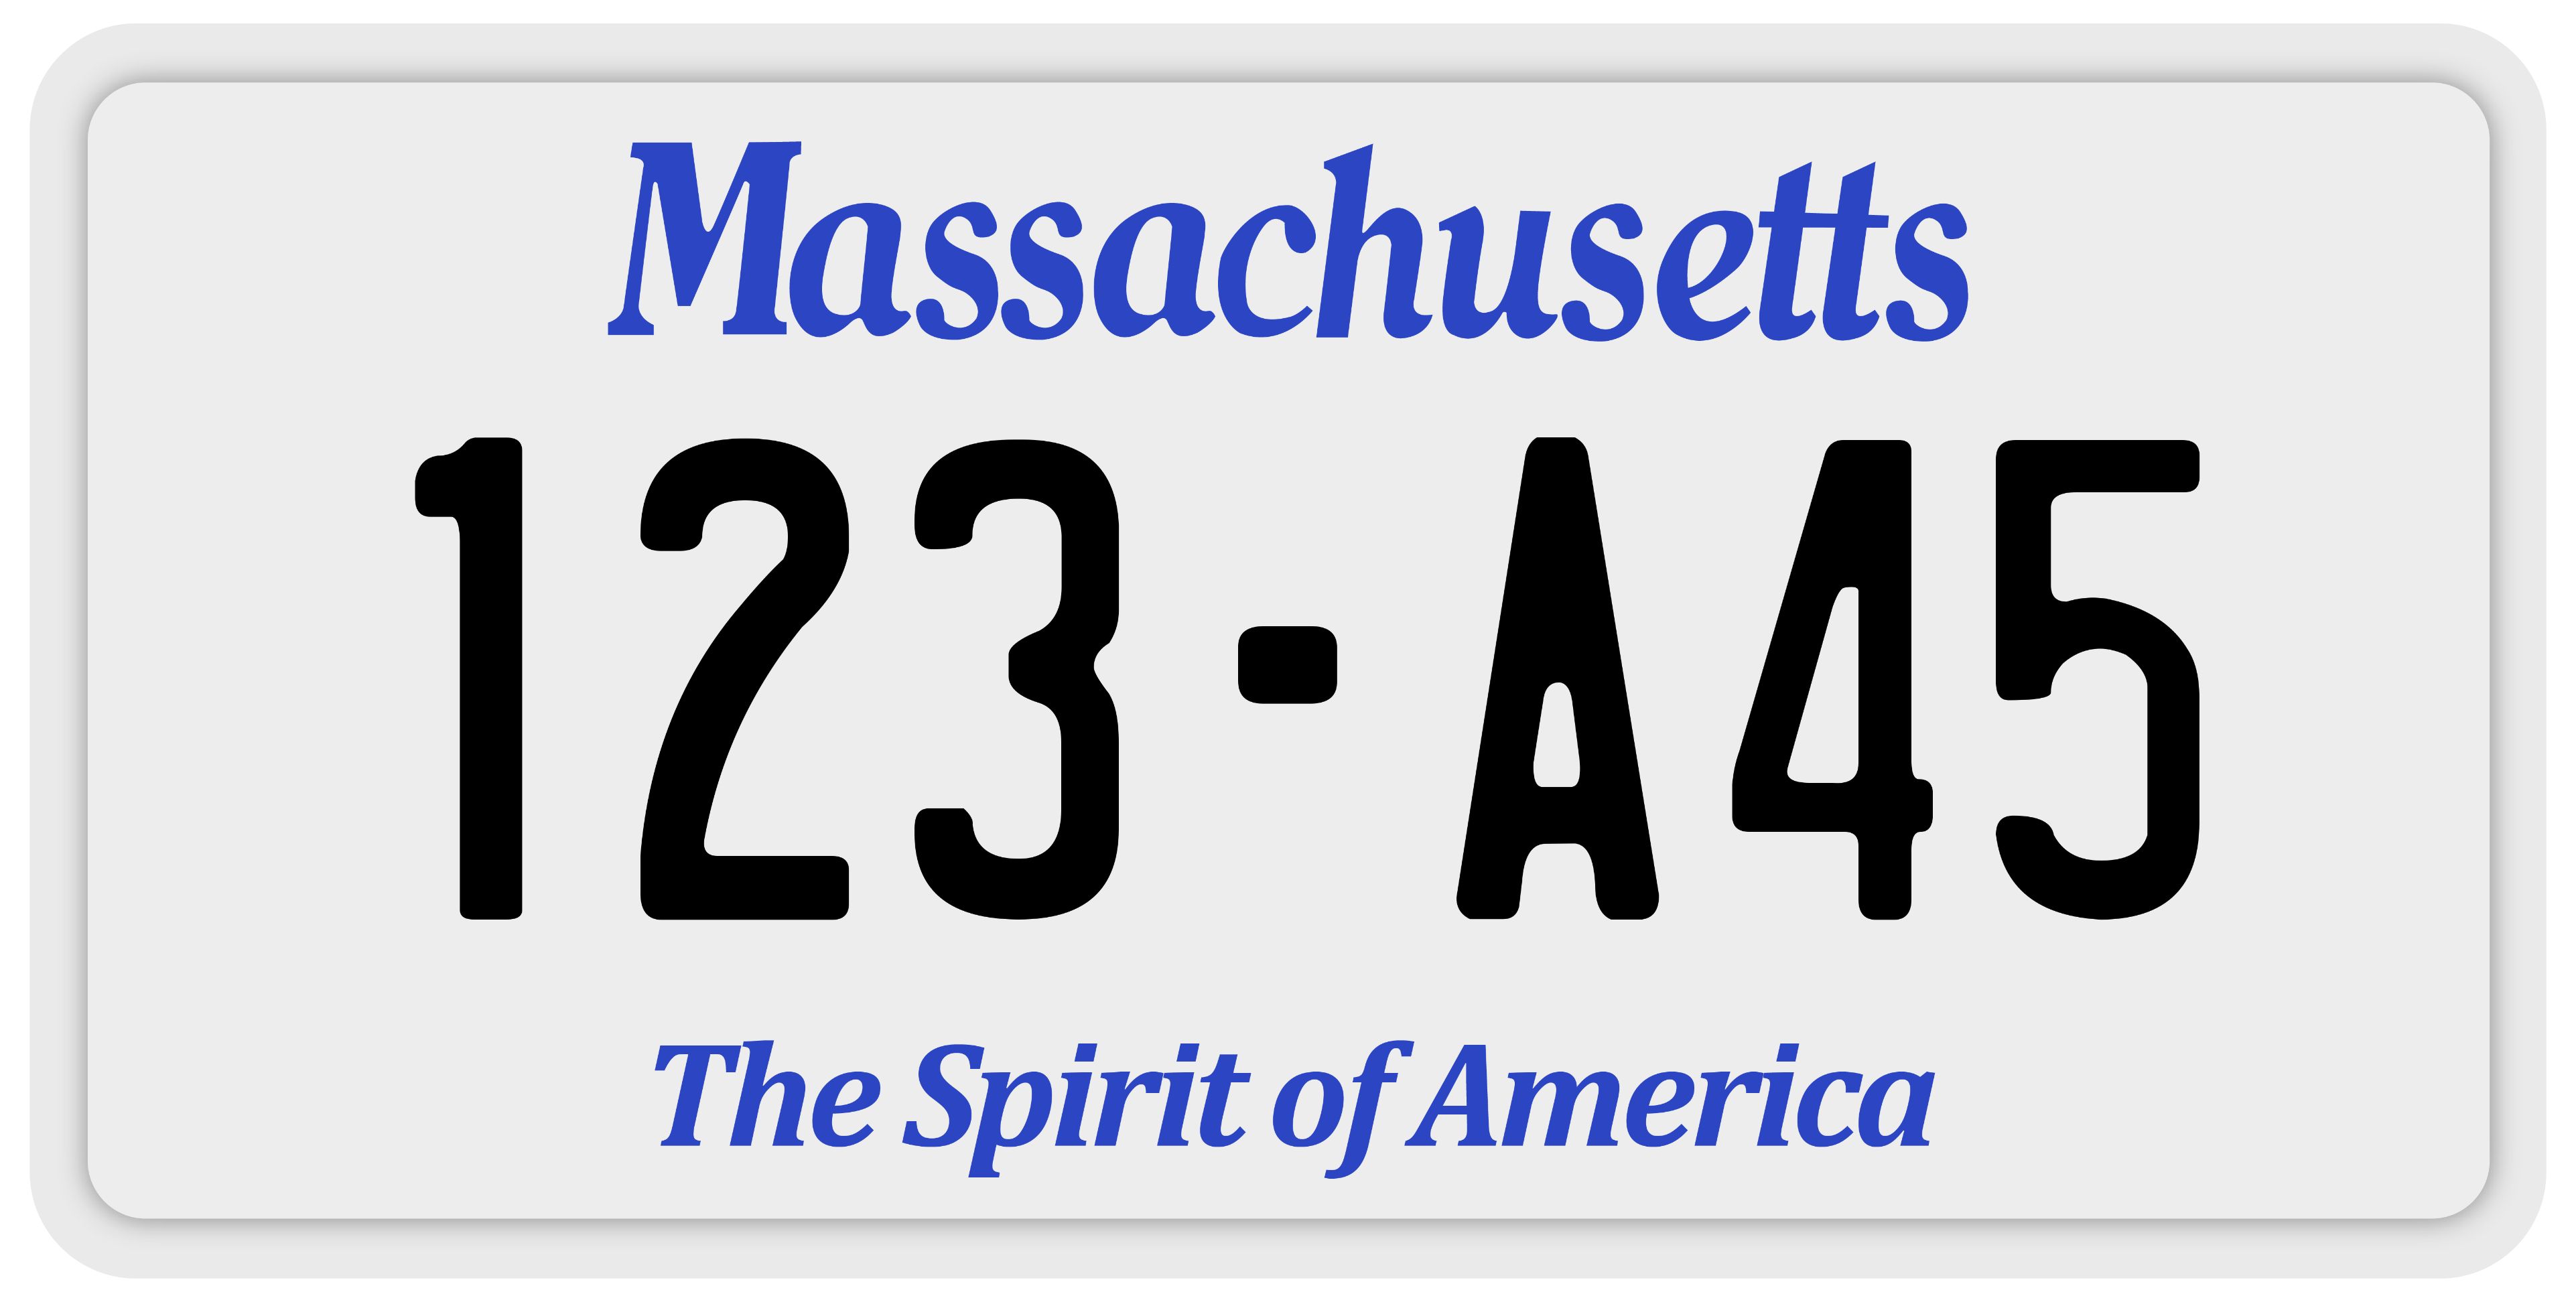 Sample Massachusetts License Plate